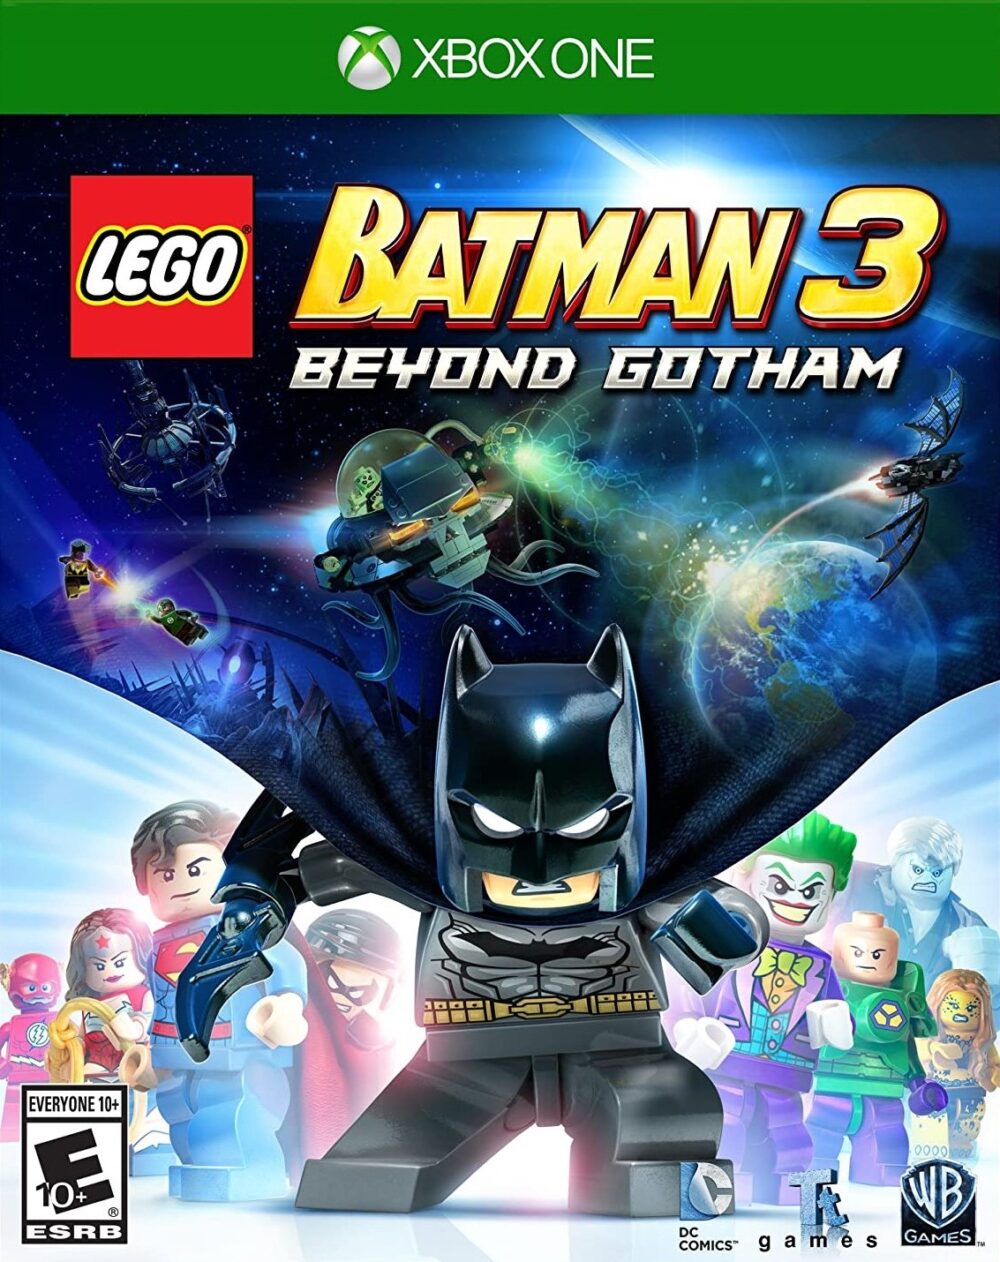 LEGO Batman 3: Beyond Gotham for Xbox One